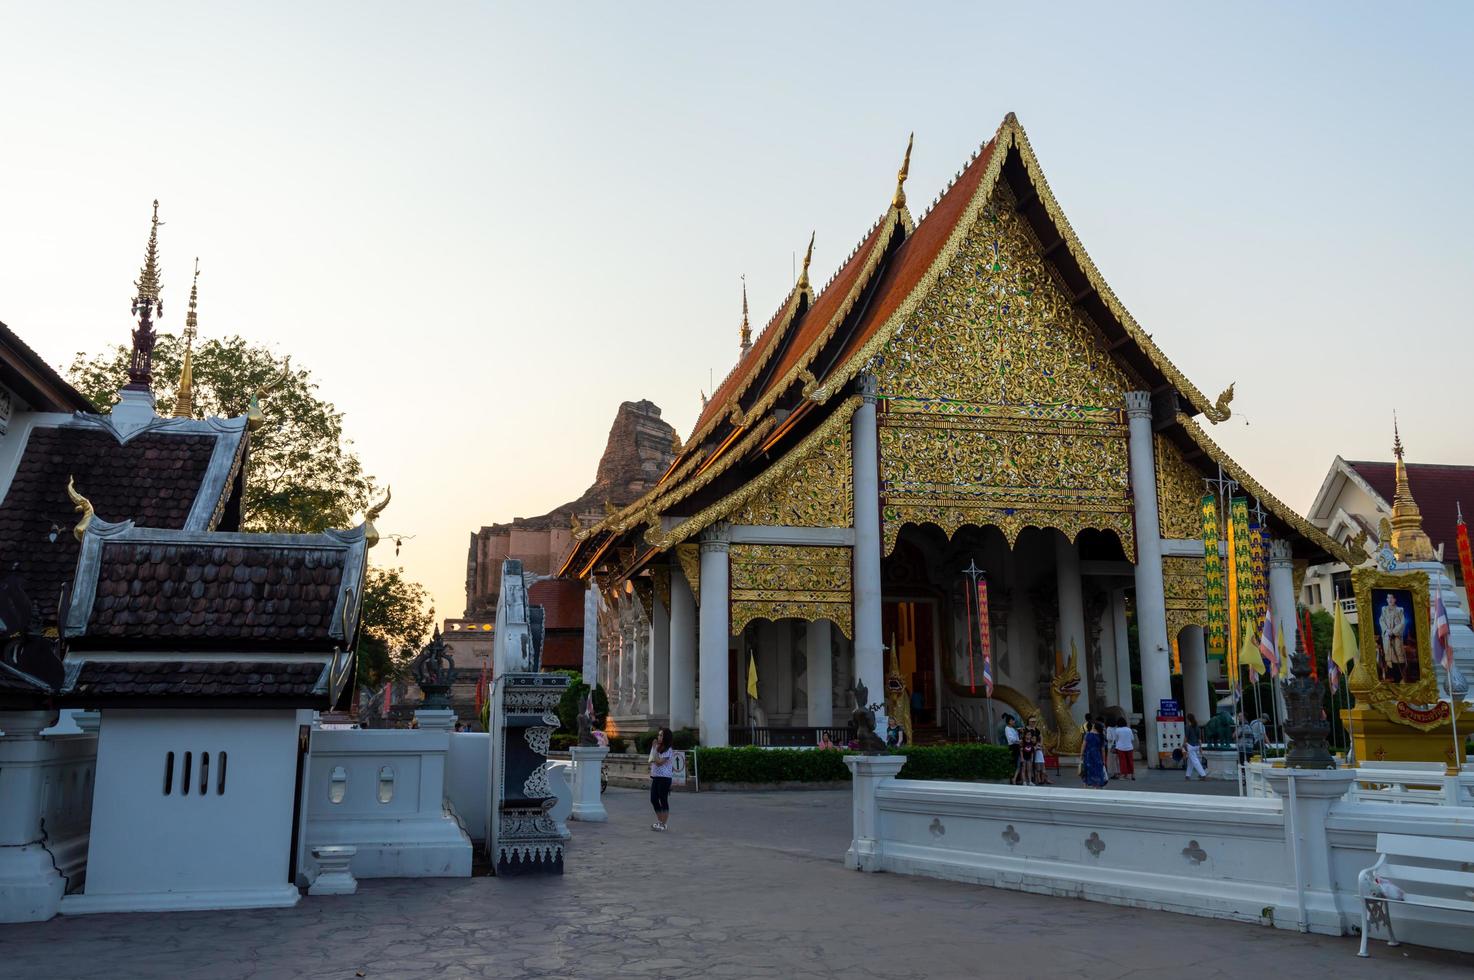 chiang mai tailandia10 de enero de 2020templo wat chedi luangconstruido durante el reinado de phaya saen mueang king rama vii de la dinastía mangrai.se espera que se construya en los años be1928 1945. foto